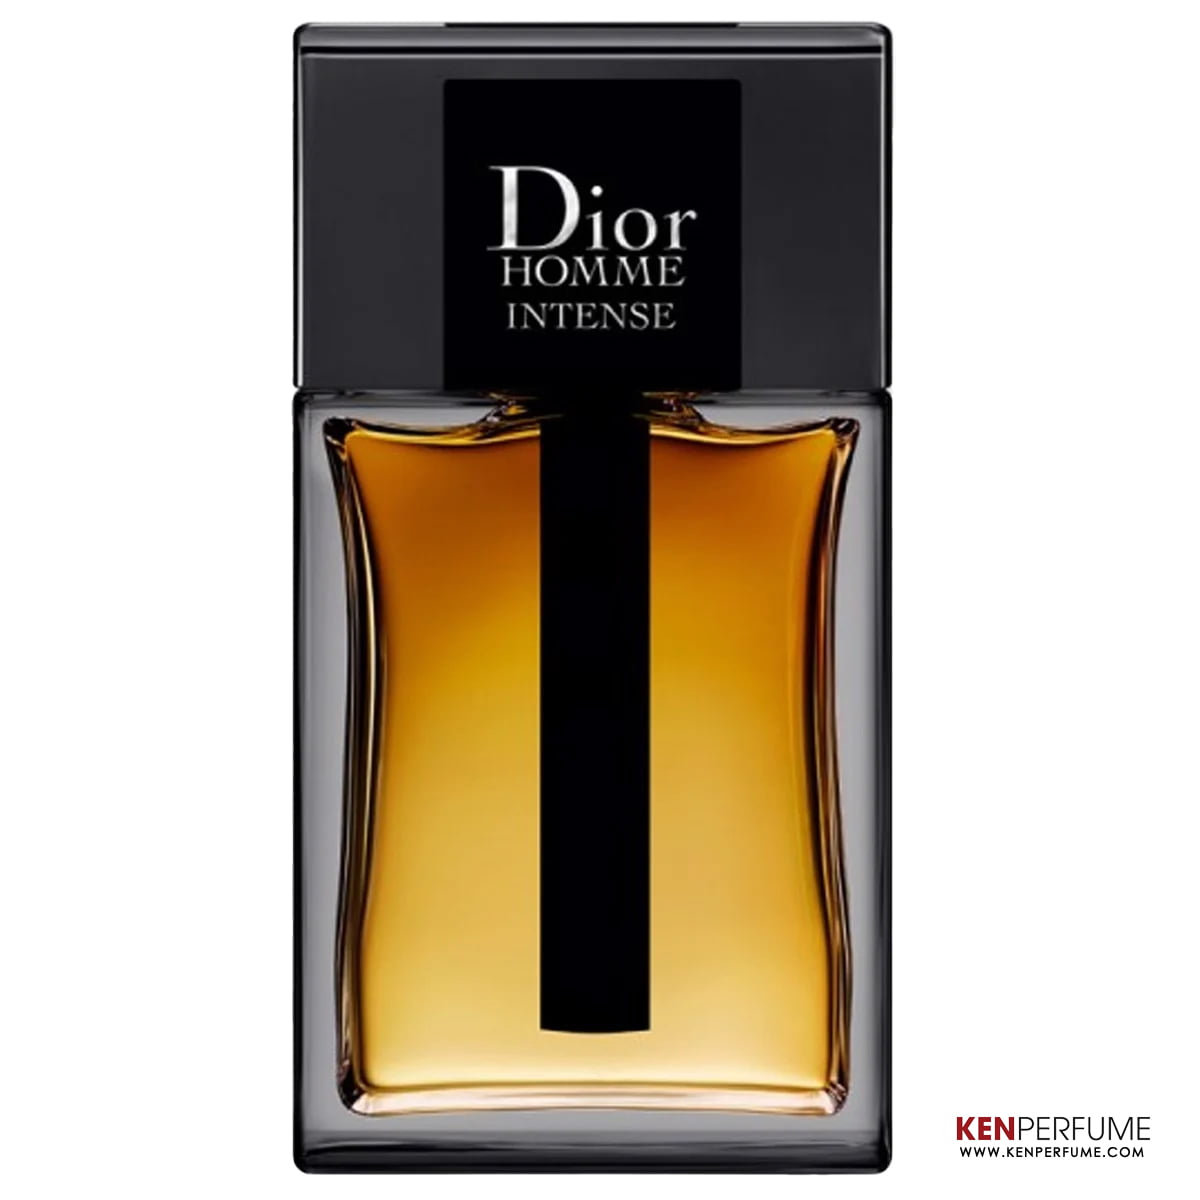 Nước hoa nam Dior Home Intense  Độ lưu hương lâu từ 7h đến 12h